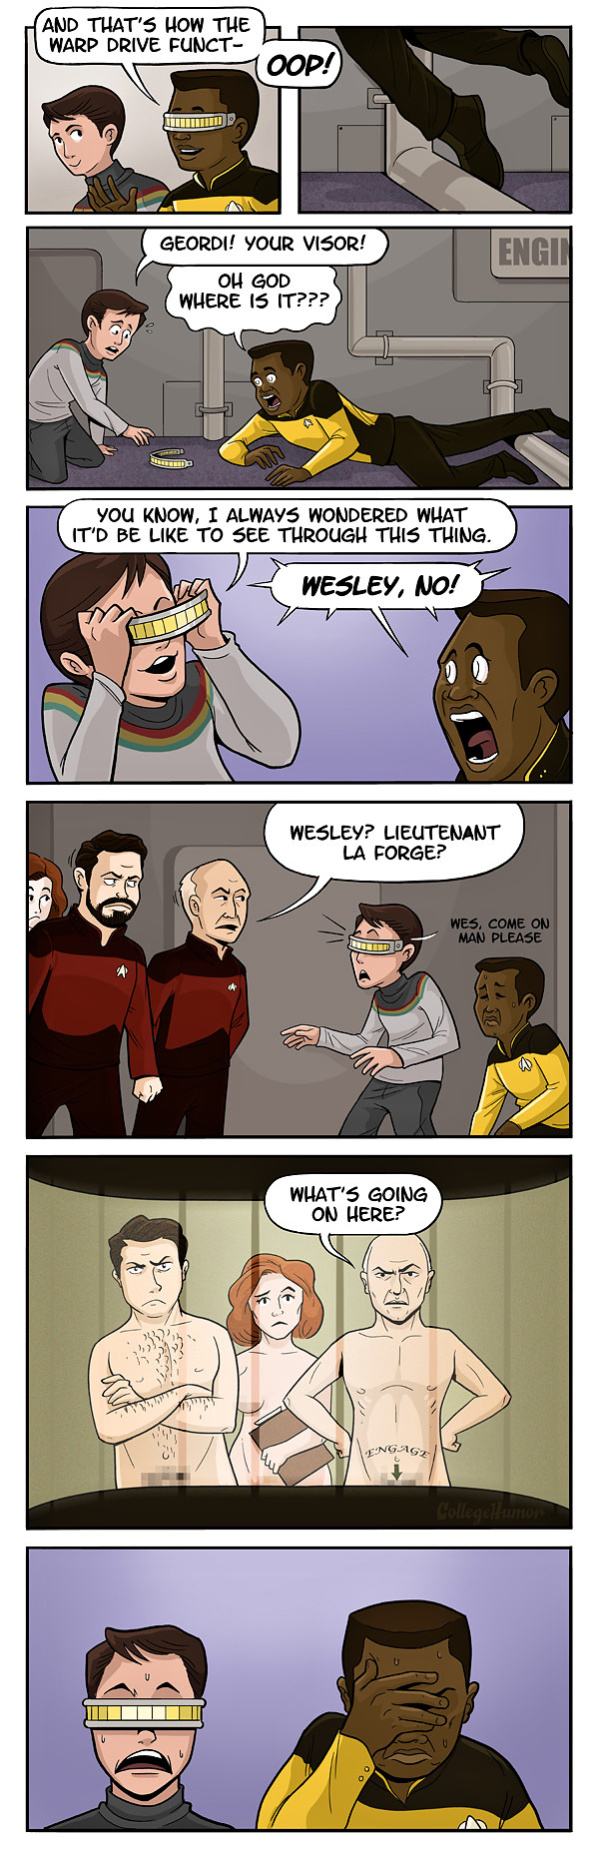 Obrázek Star Trek - unforeseen consequences 09-02-2012